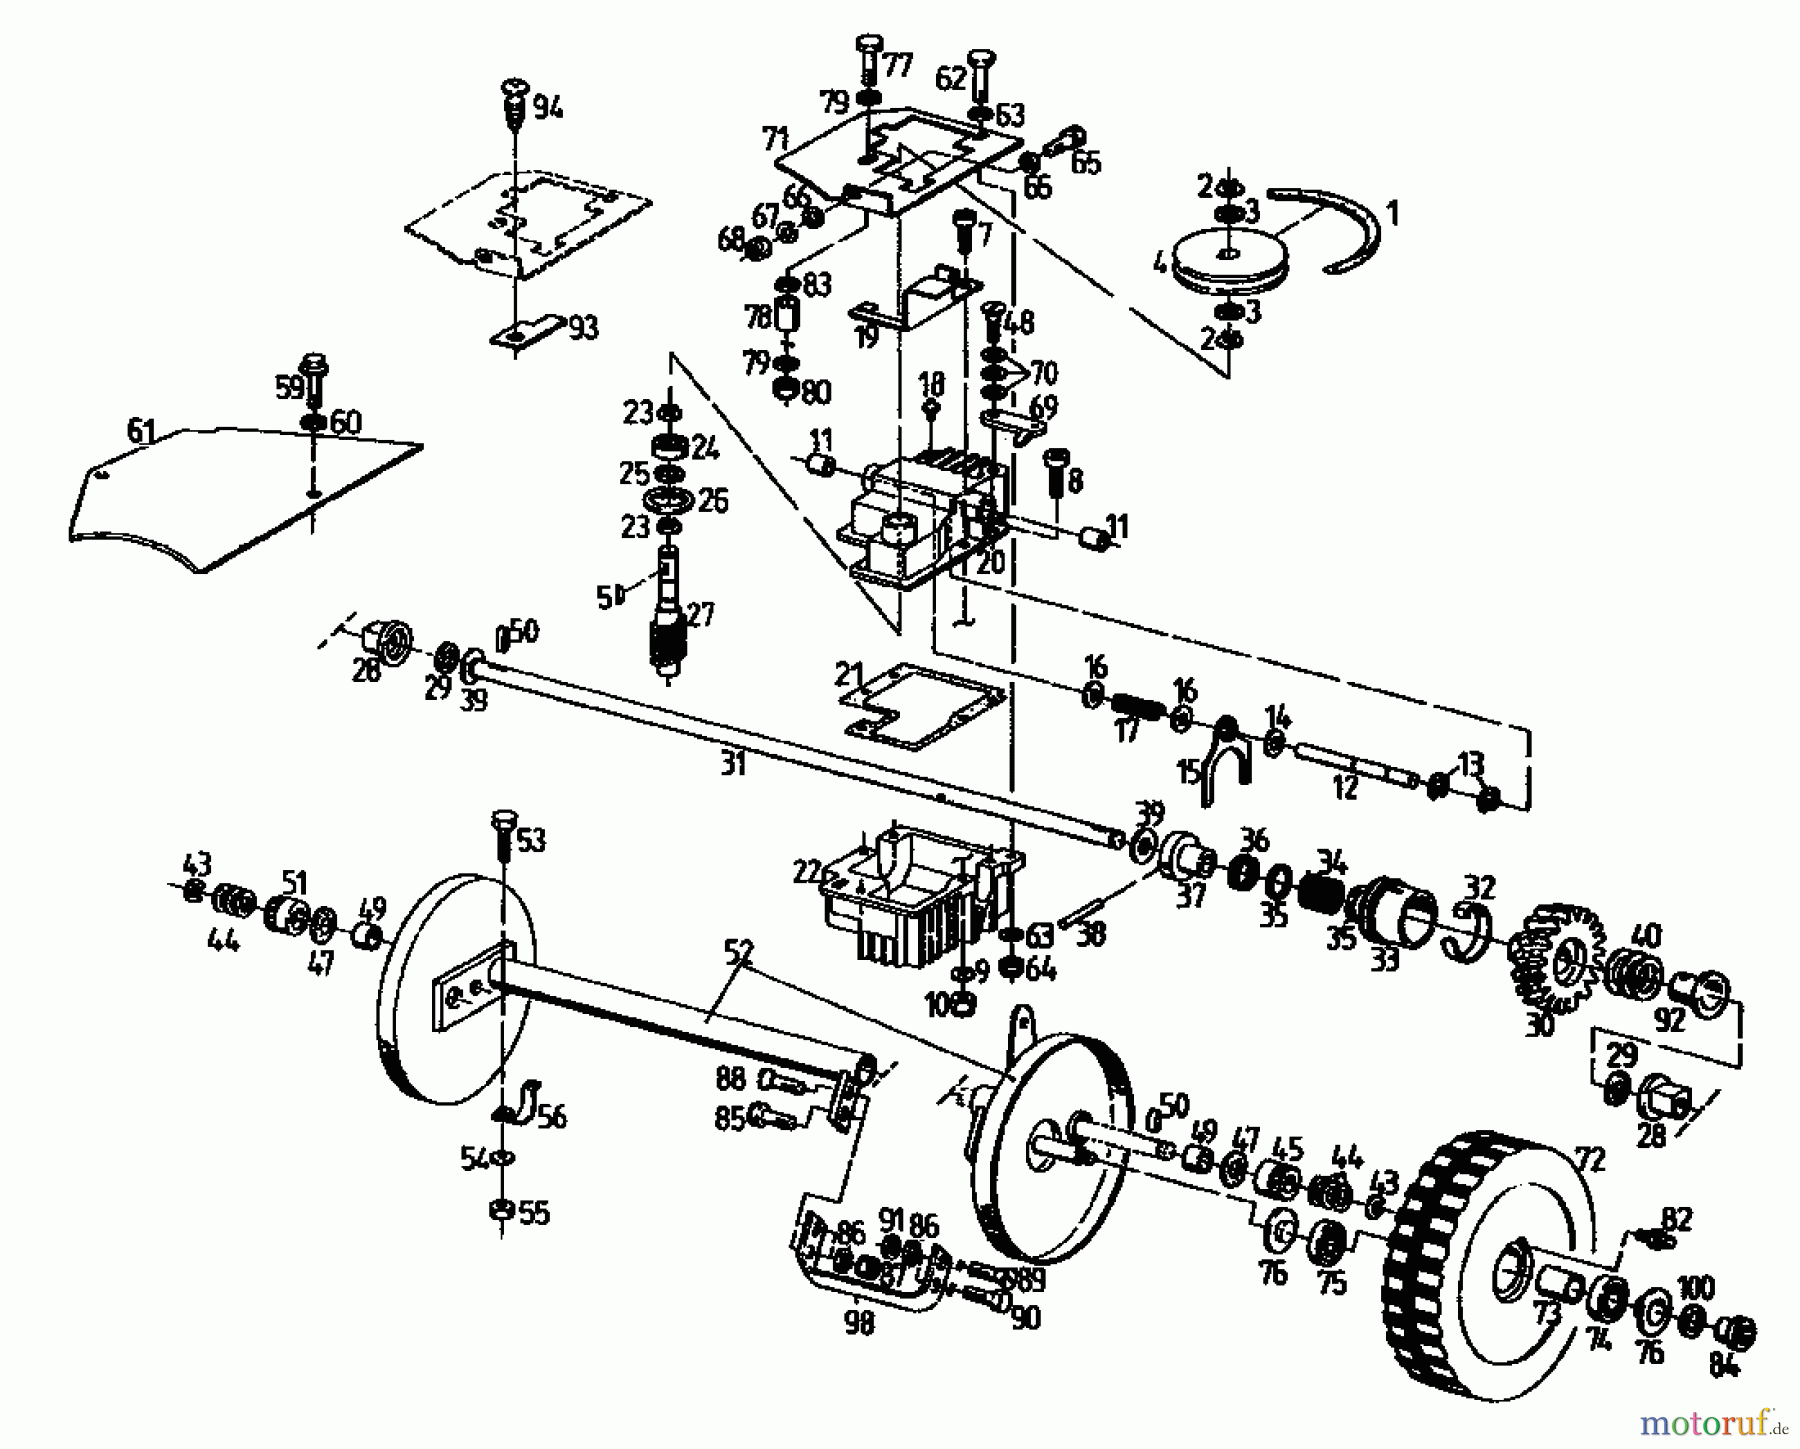  Gutbrod Petrol mower self propelled MH 534 PR 04017.03  (1996) Gearbox, Wheels